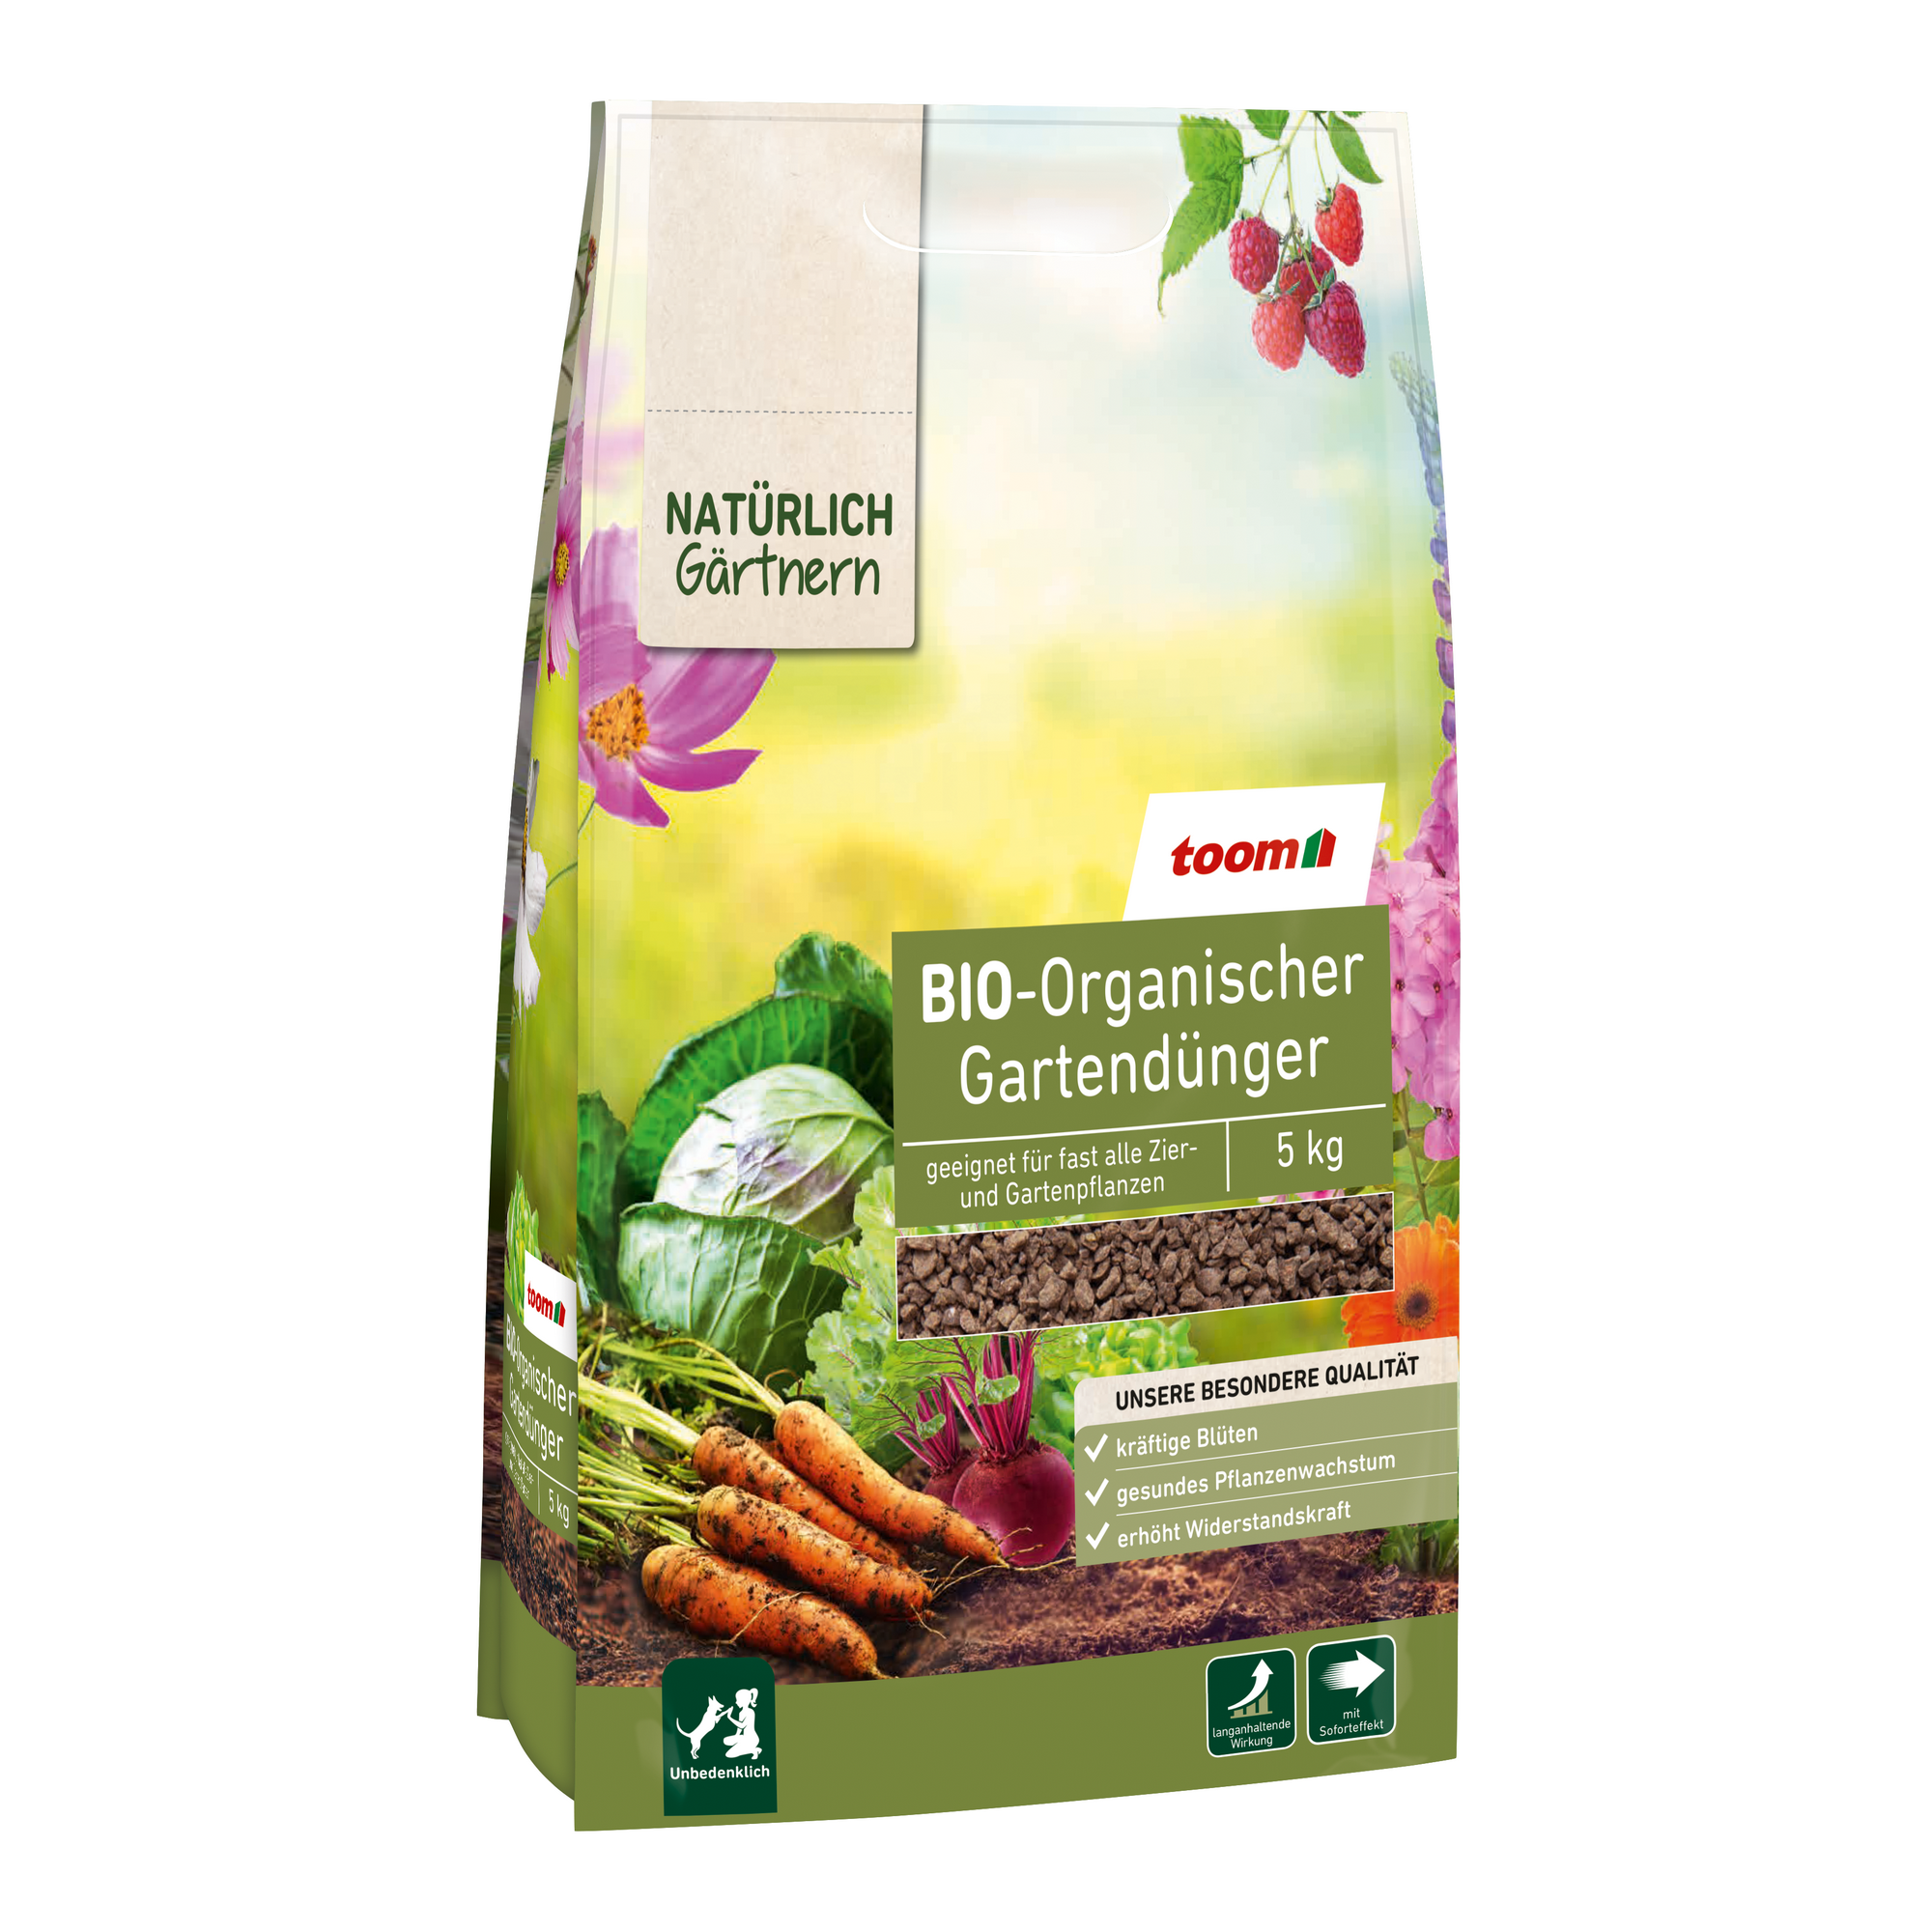 Bio-Organischer Gartendünger 5 kg + product picture